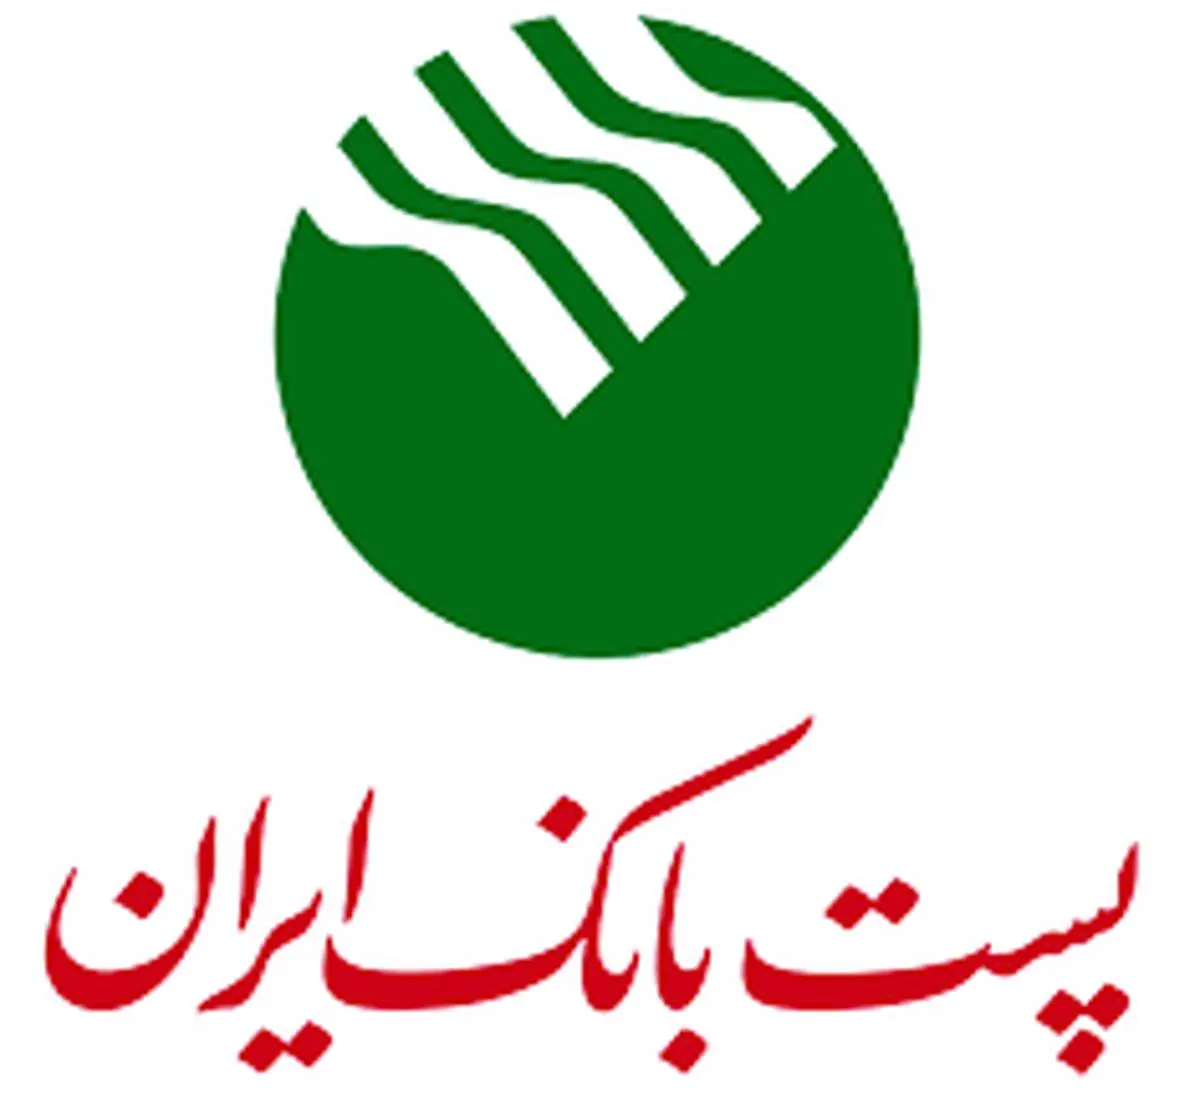 عضو کمیسیون اقتصادی مجلس: پست بانک ایران دروازه ارائه خدمات دولت در روستاهاست